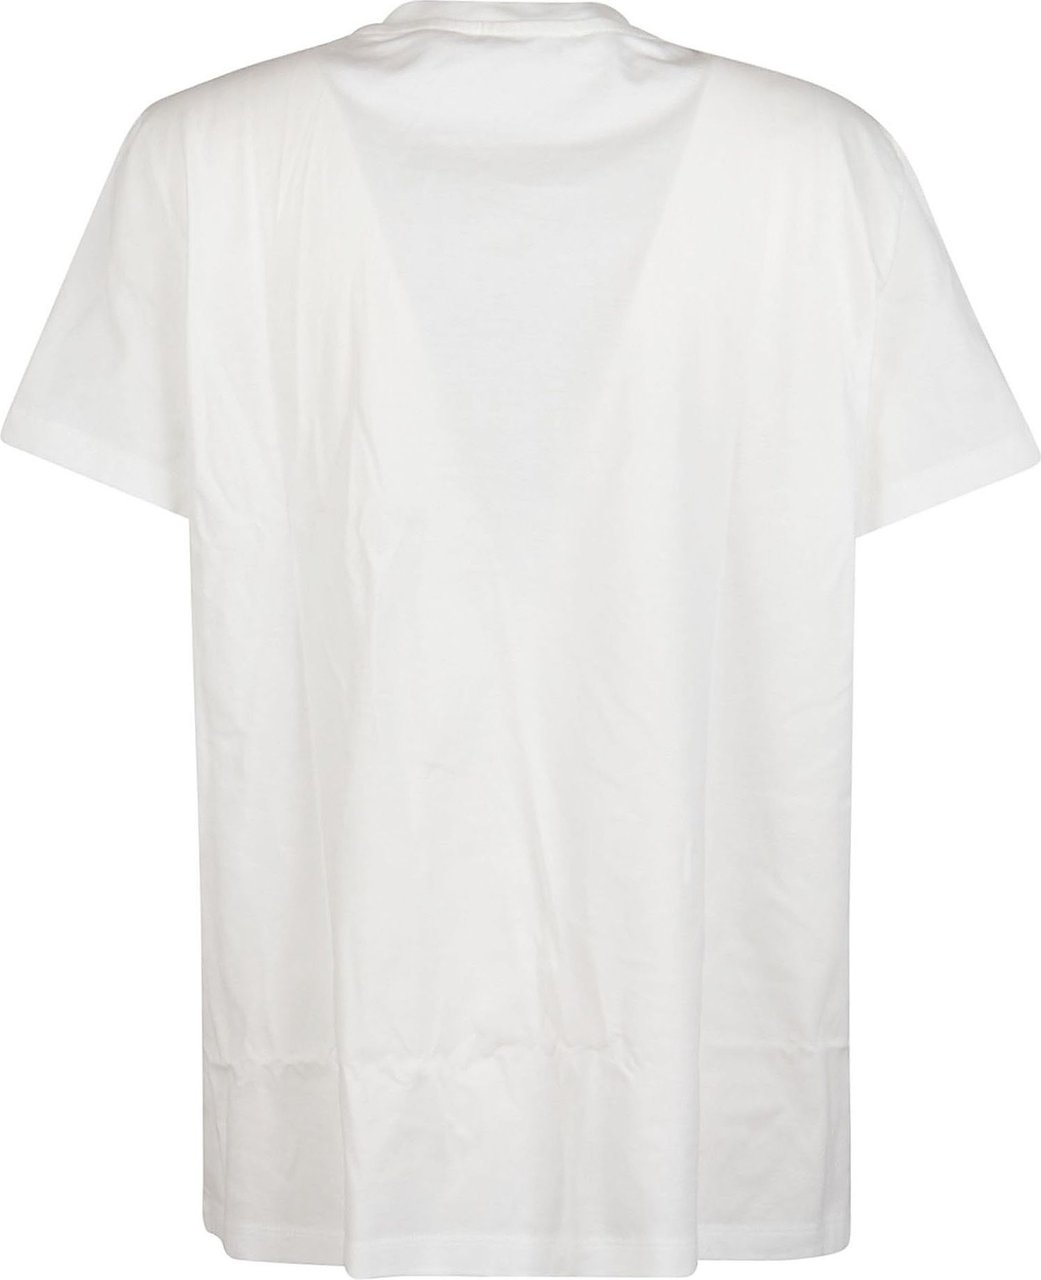 Max Mara Tshirt T-shirt White Wit